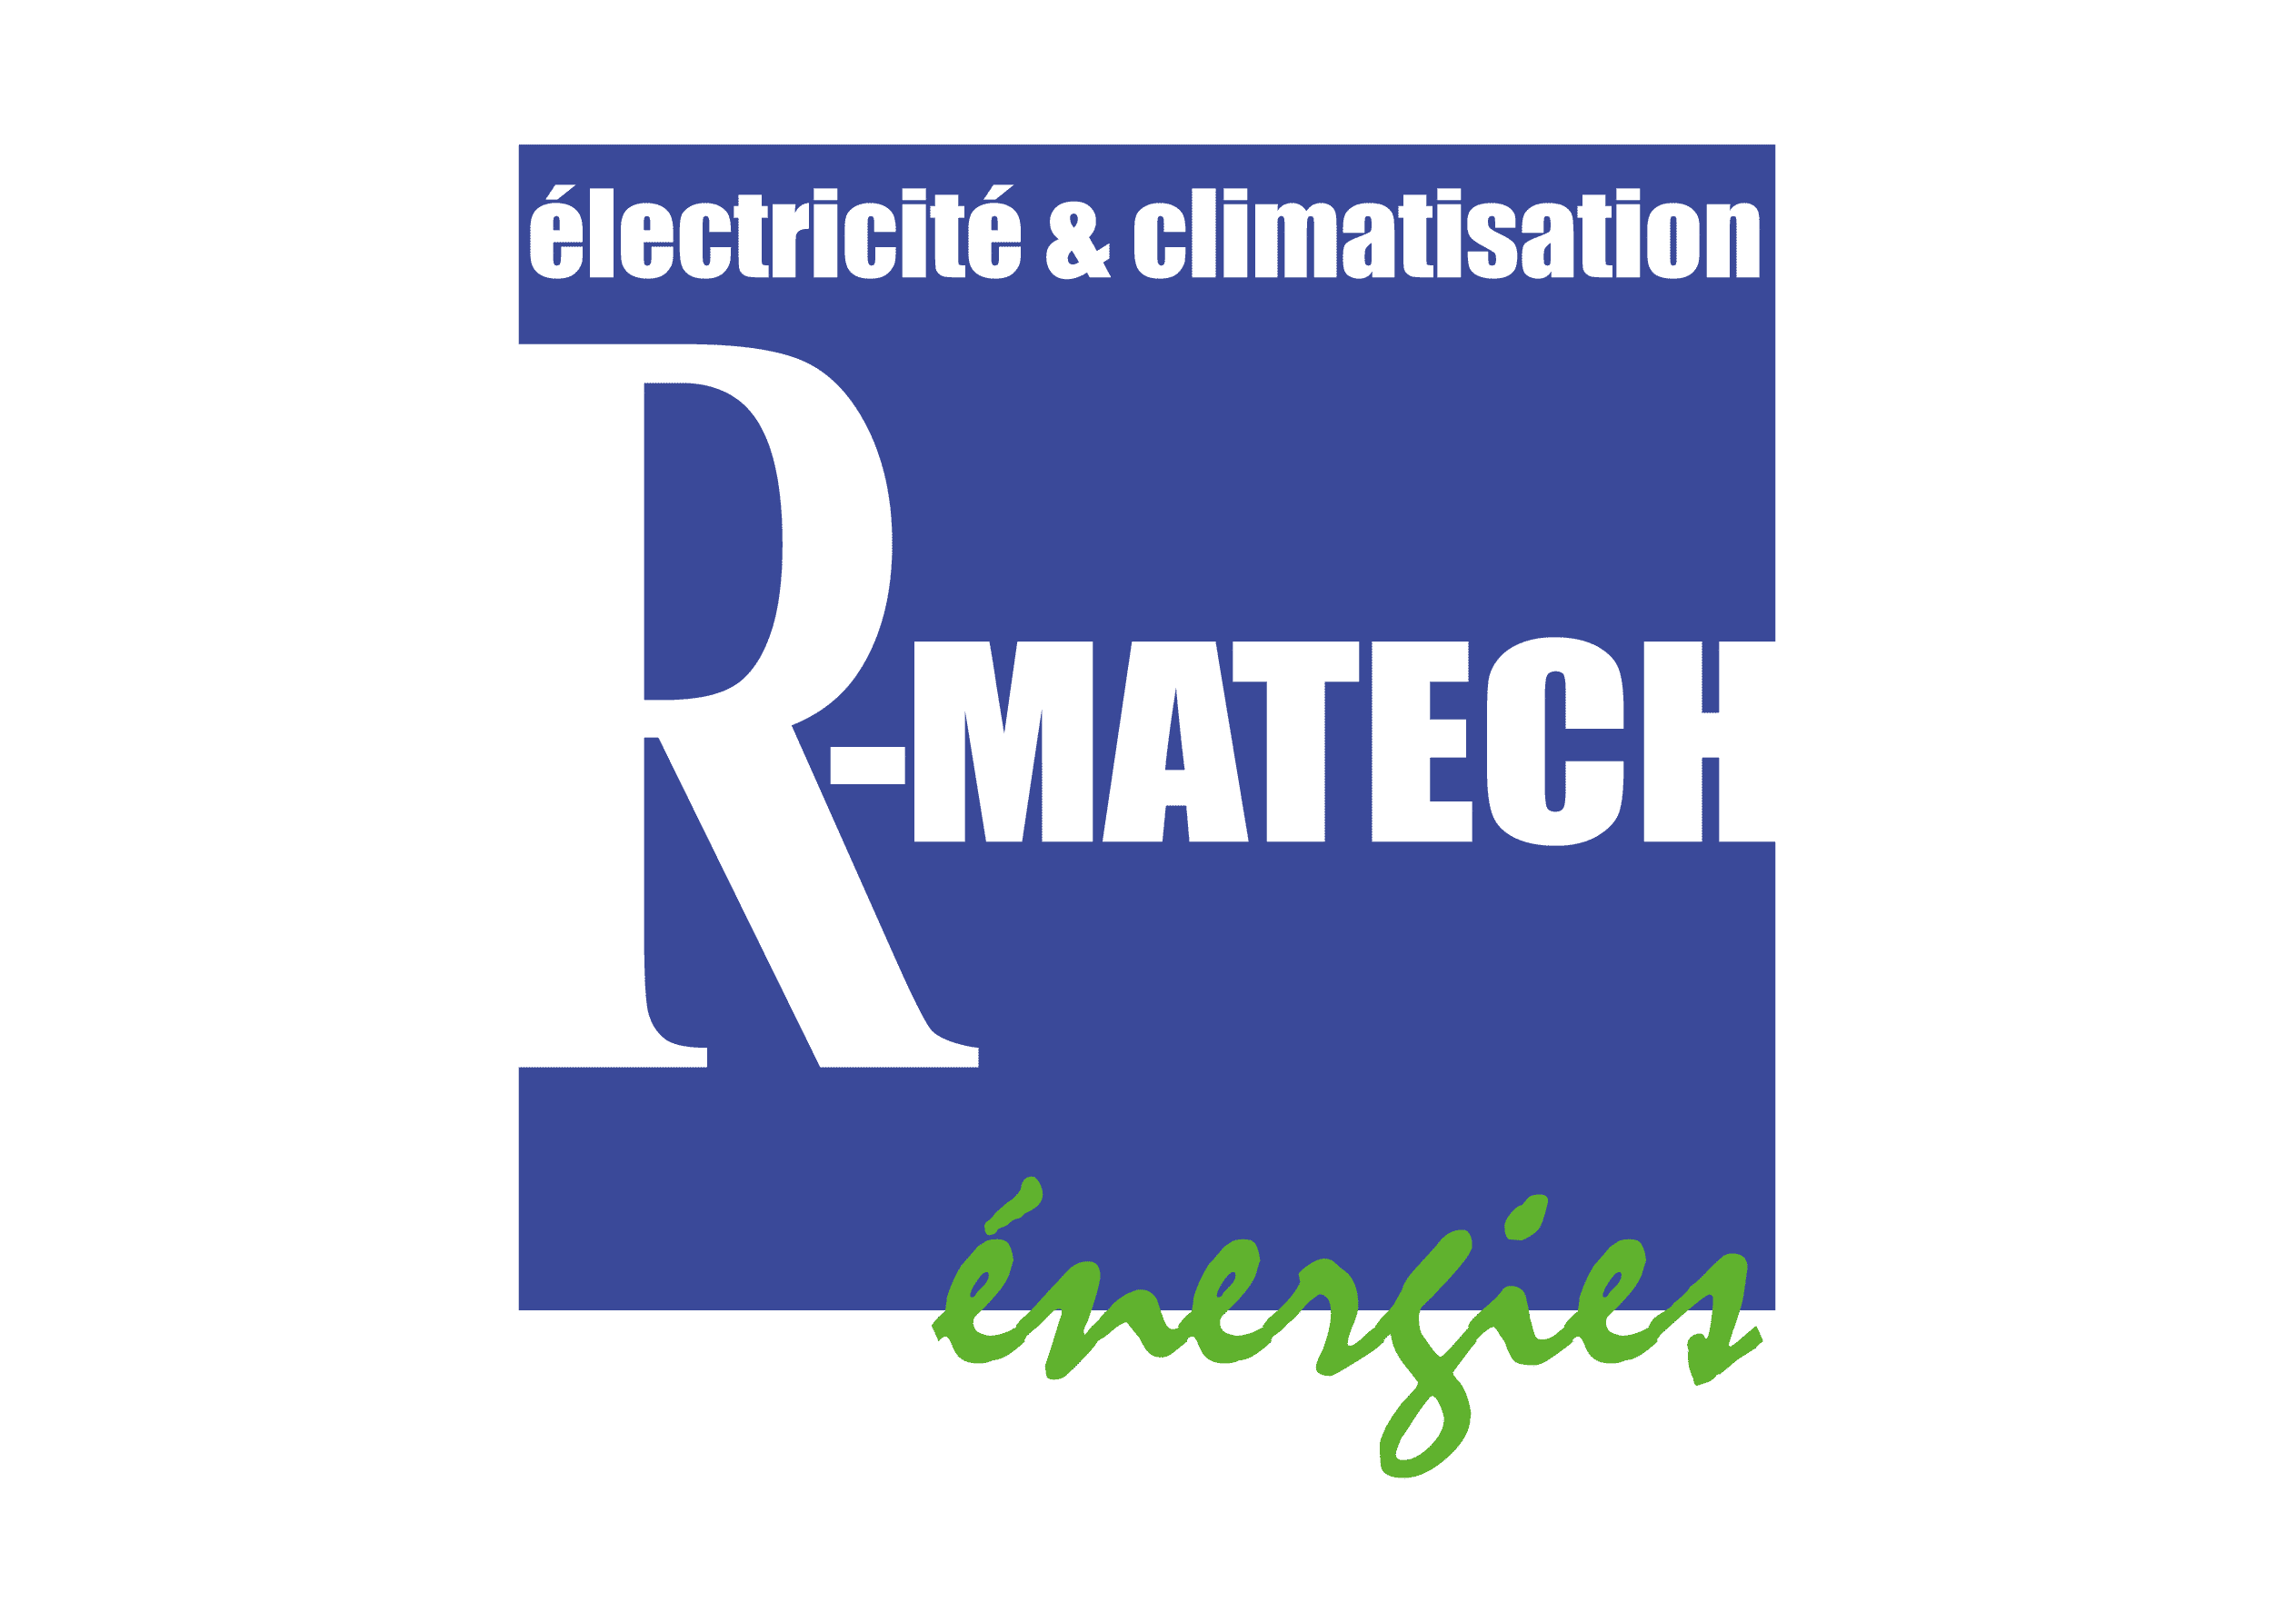 R-matech